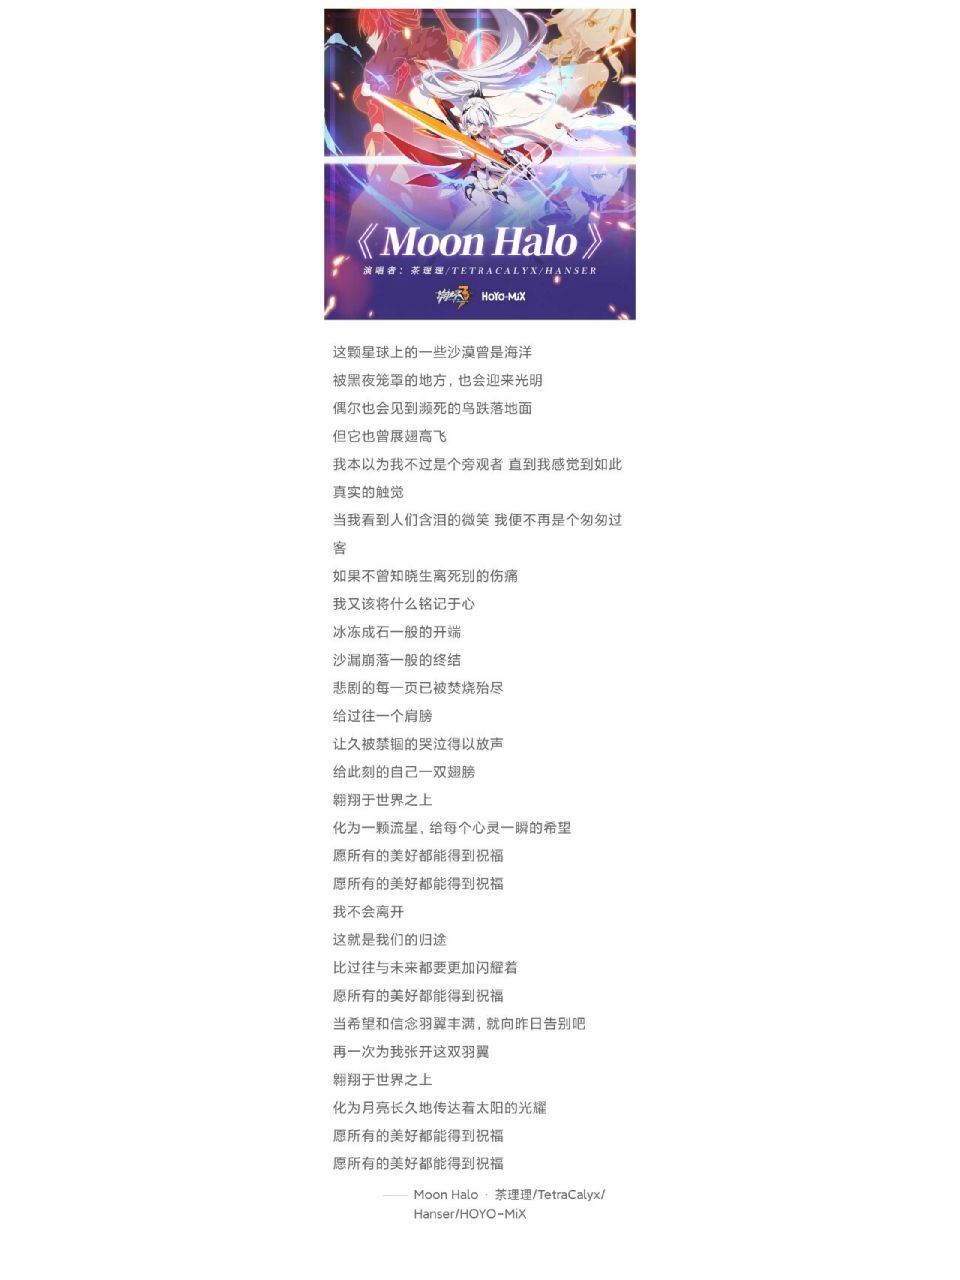 moon halo简谱 翻译 空耳 侵权删 仅整理